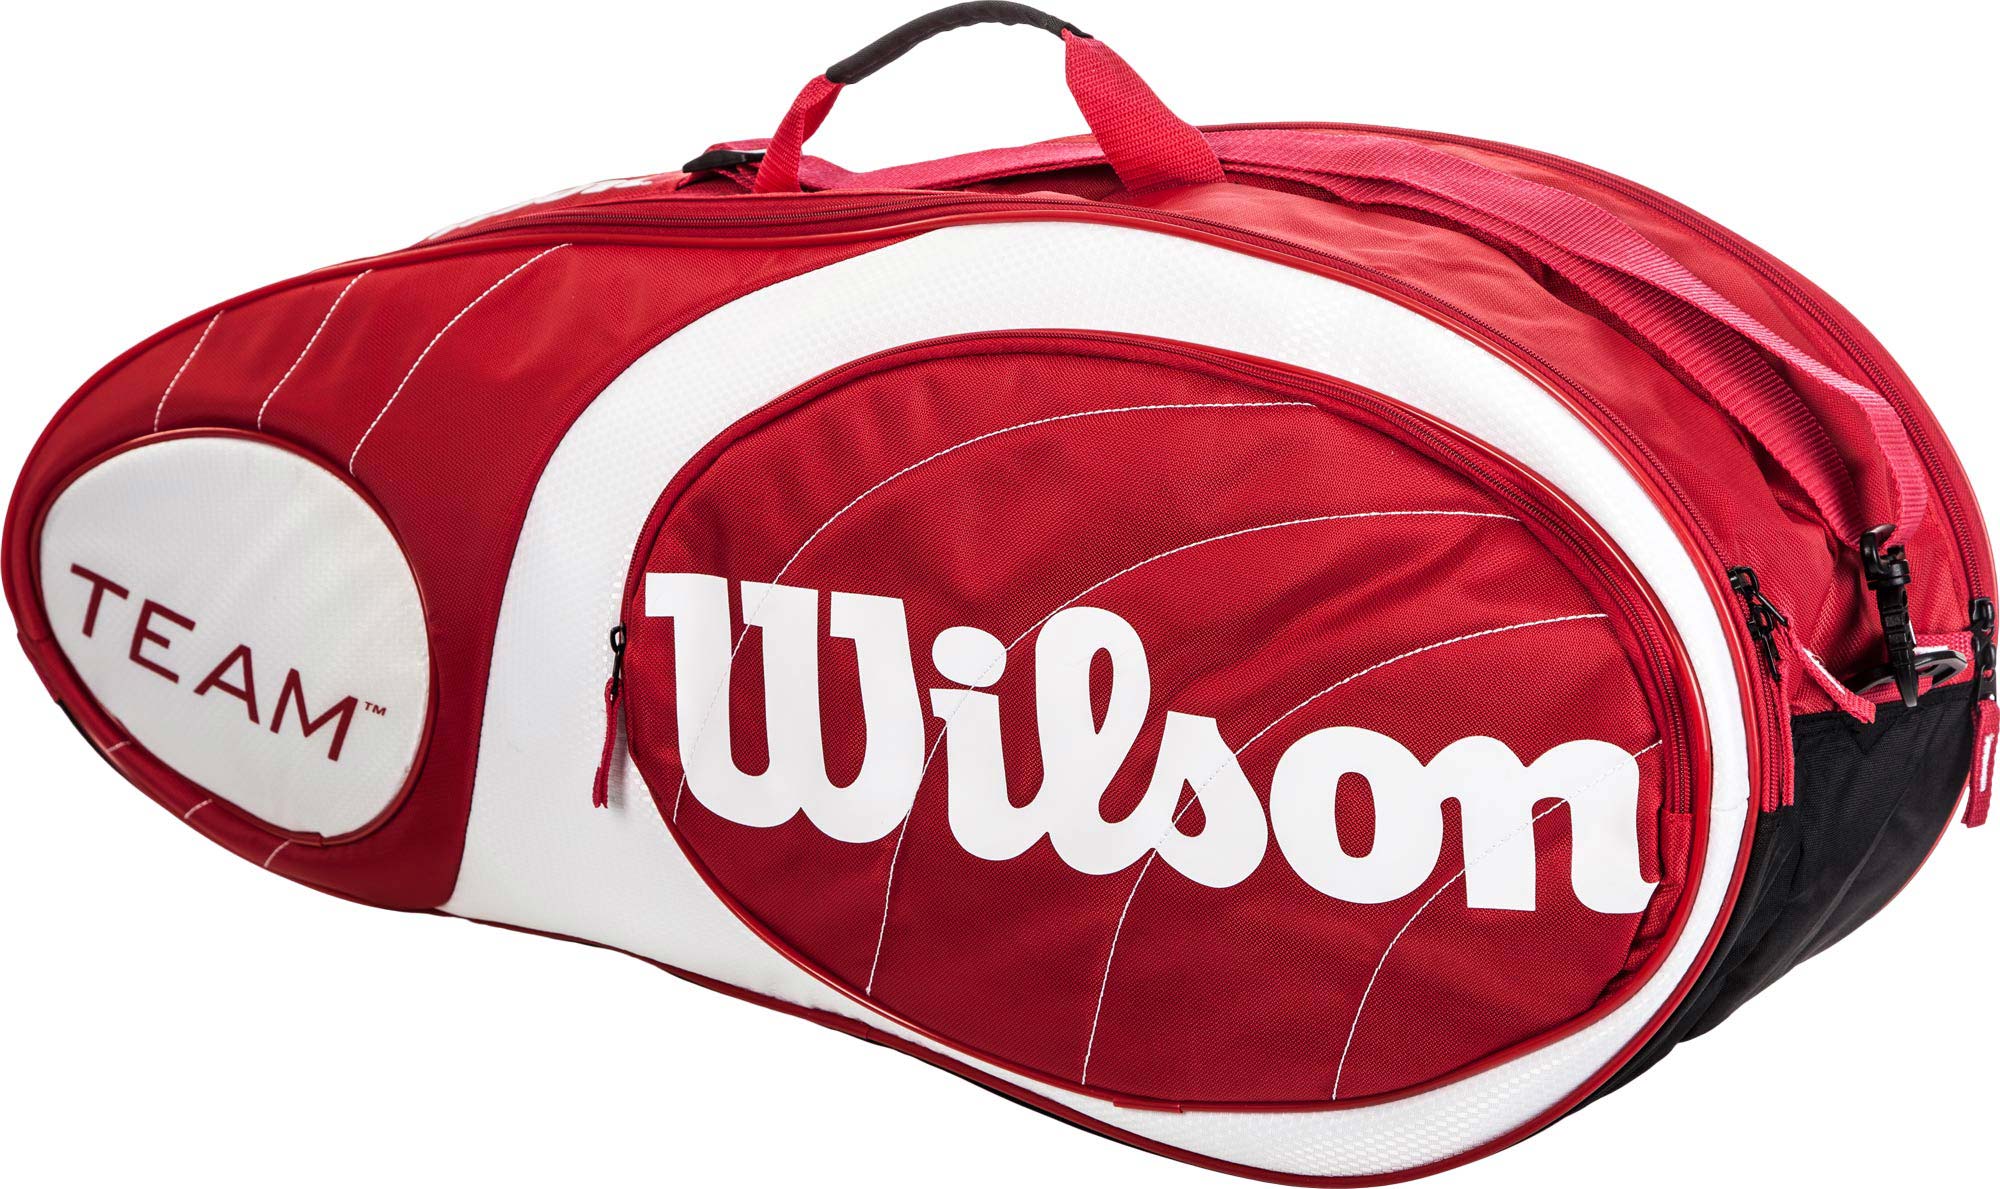 TEAM 6PK BAG RDWH - Tennis bag